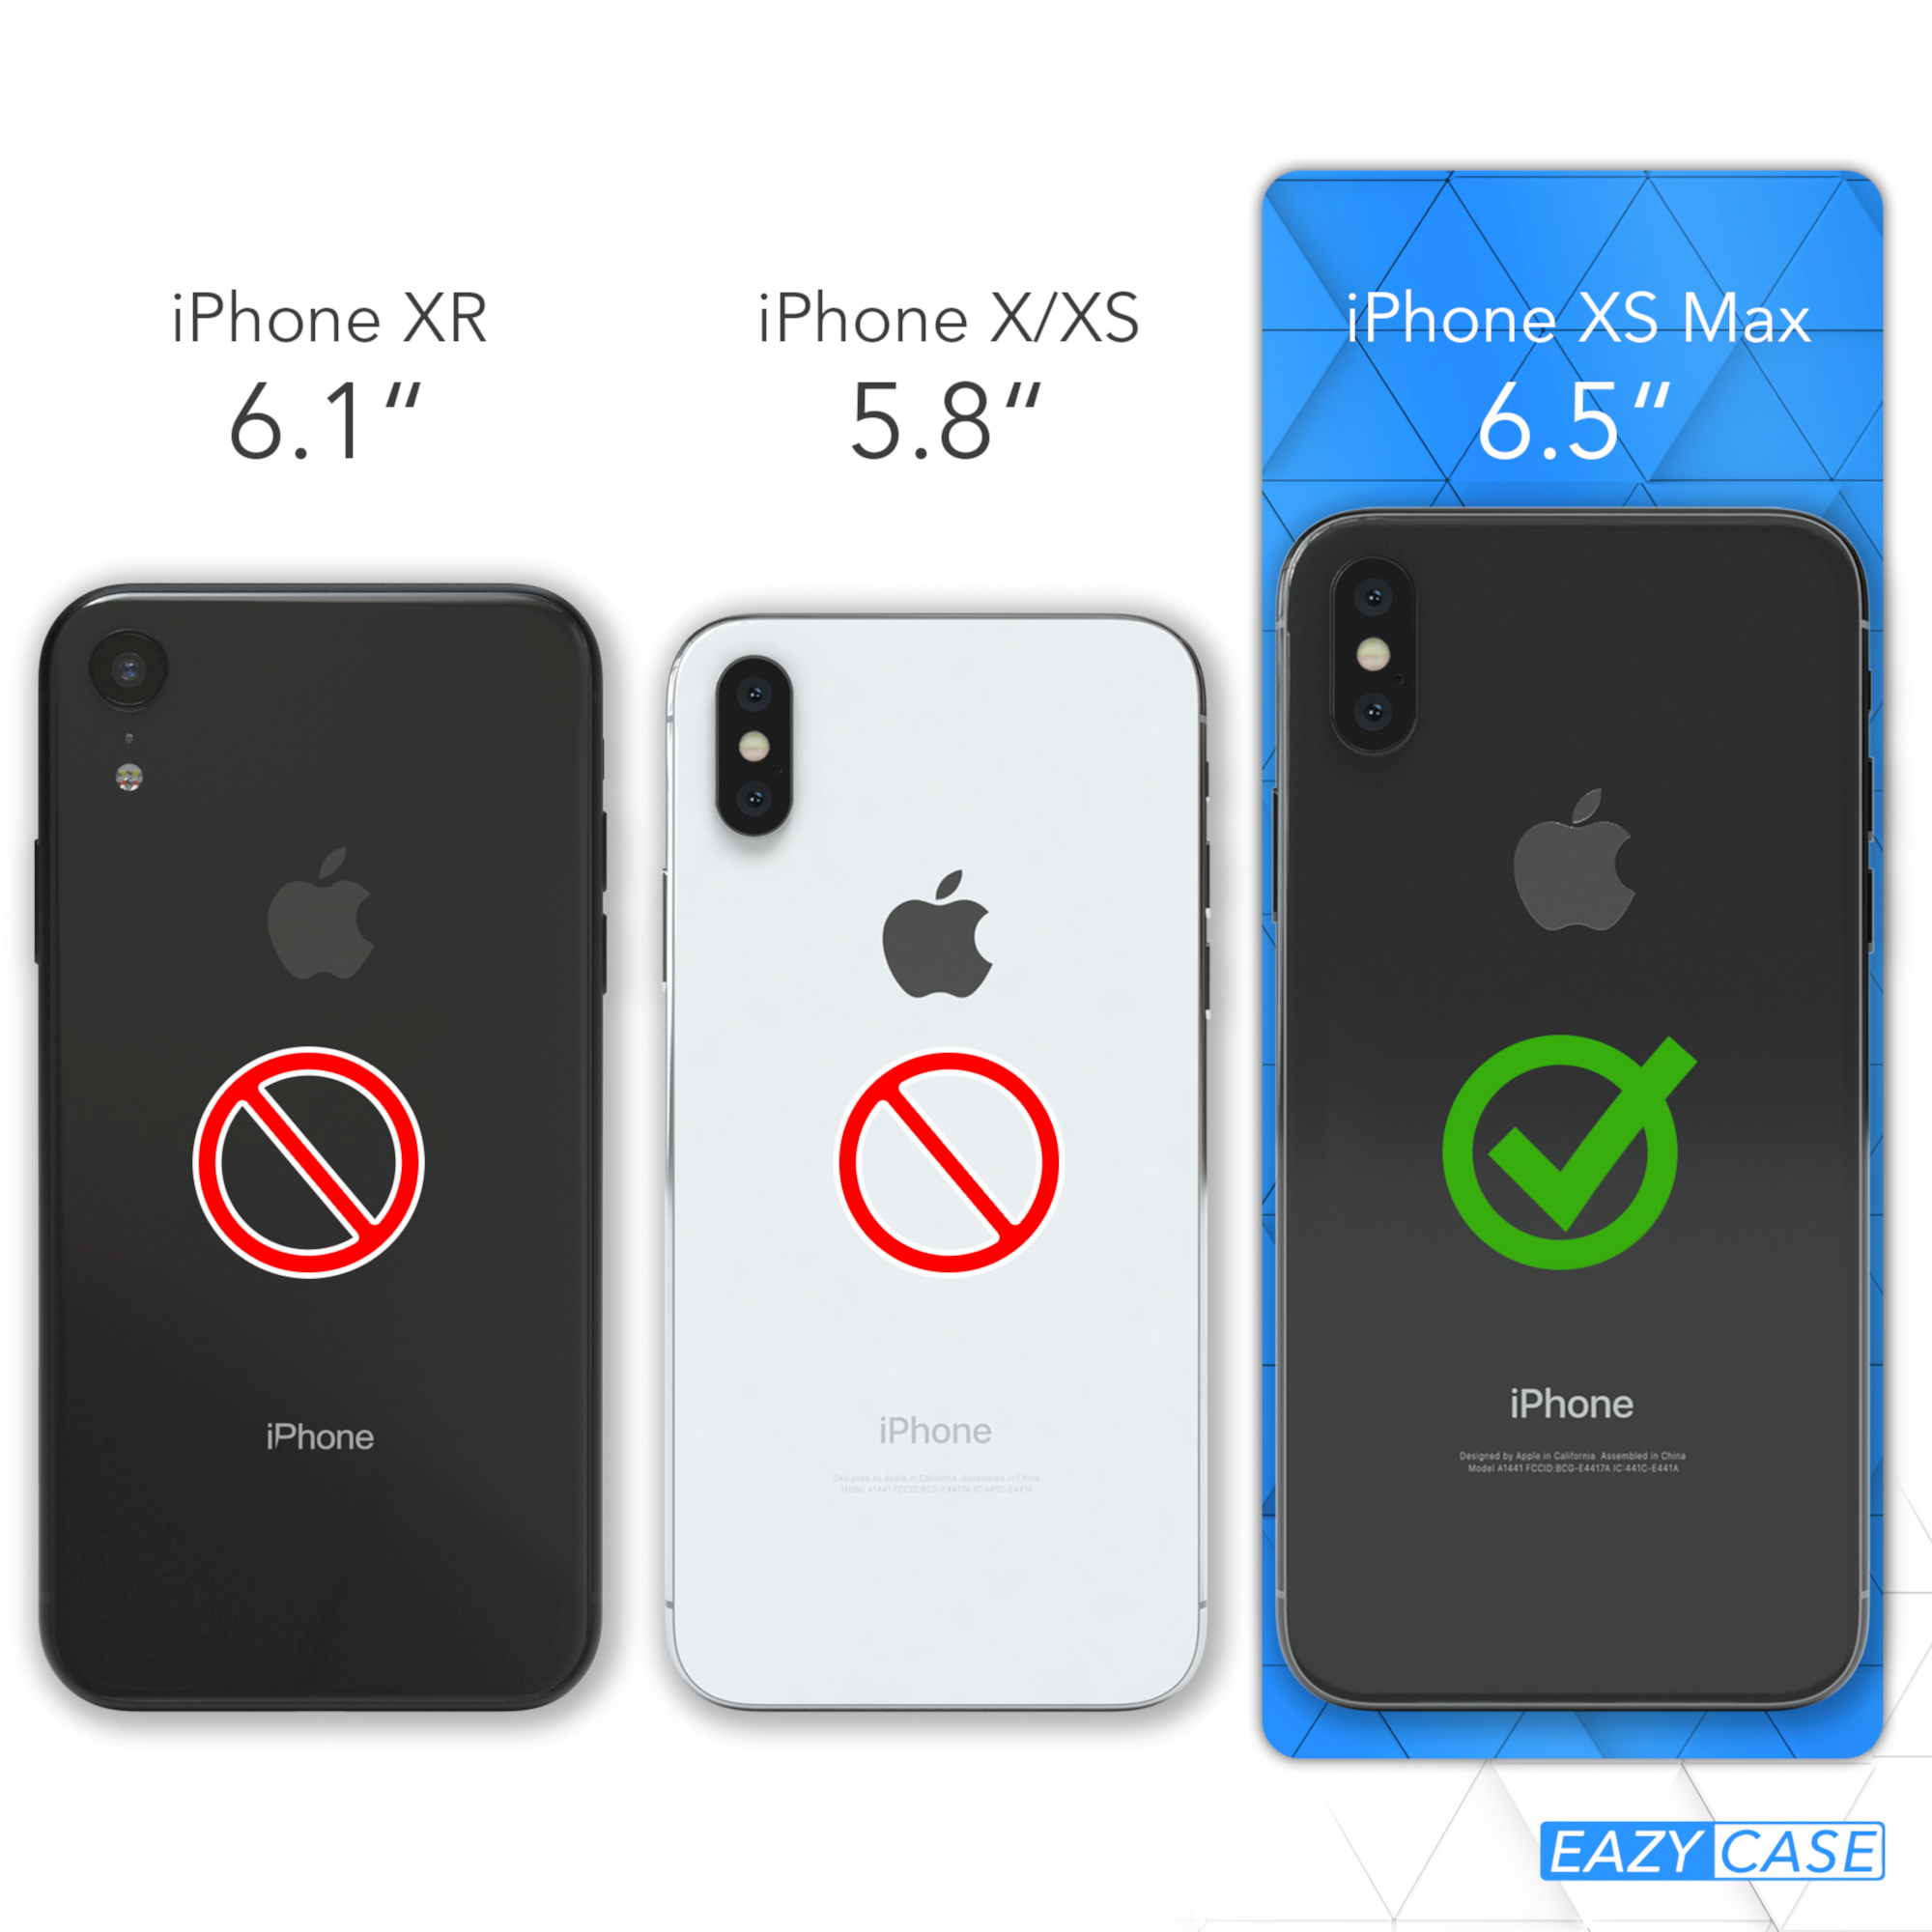 CASE Apple, Kordel Taupe + Handyhülle breiter EAZY mit Max, XS / Grau iPhone Beige Karabiner, Transparente Umhängetasche,